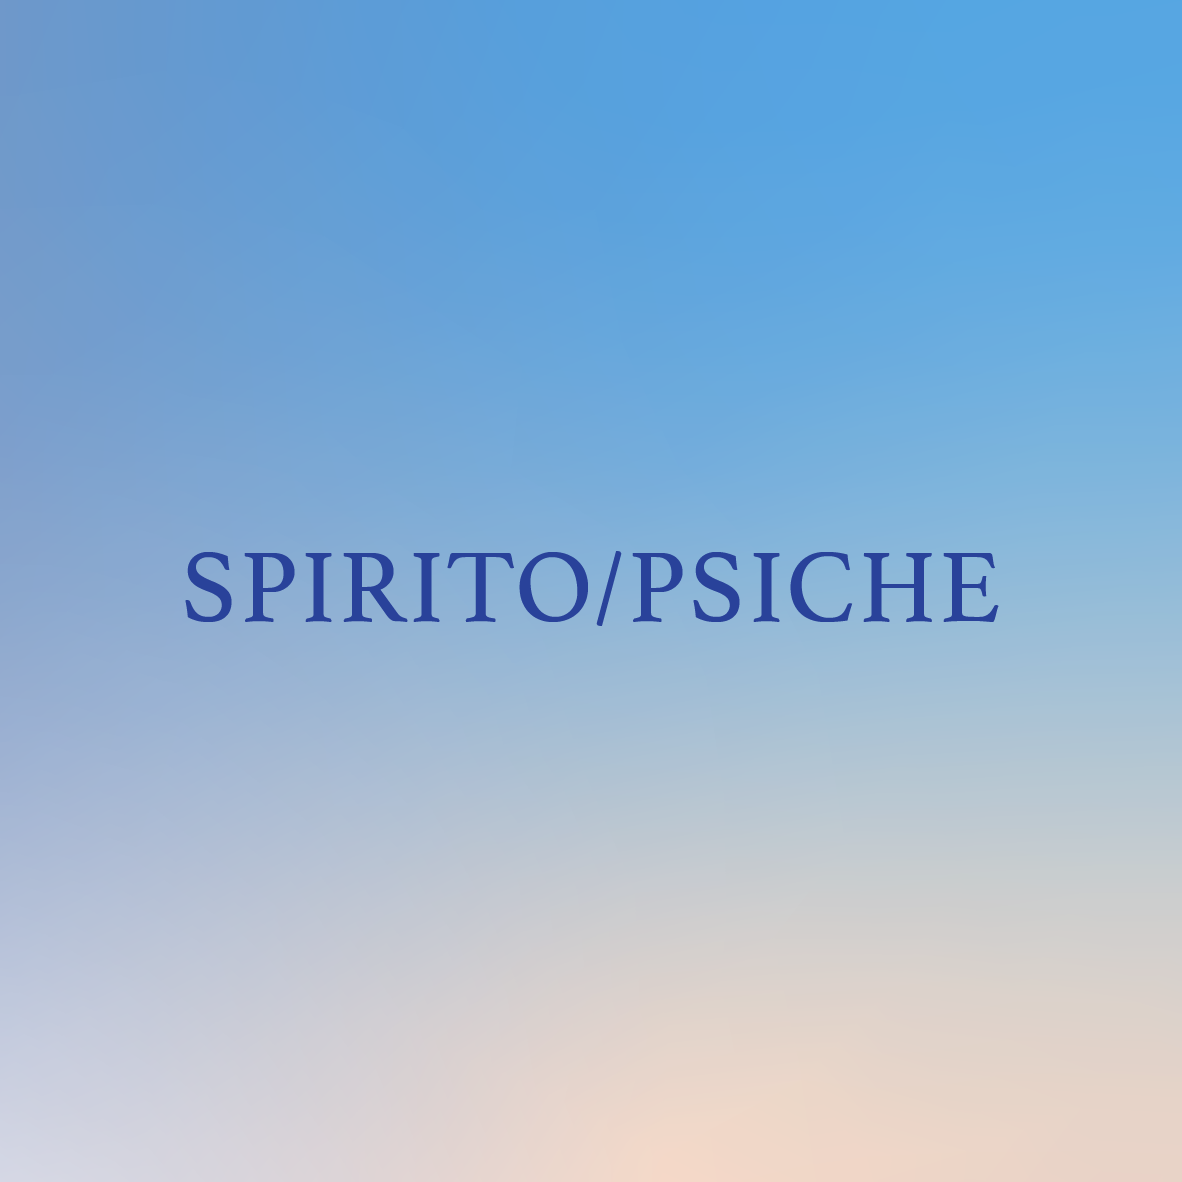 La parola spirito è su sfondo blu